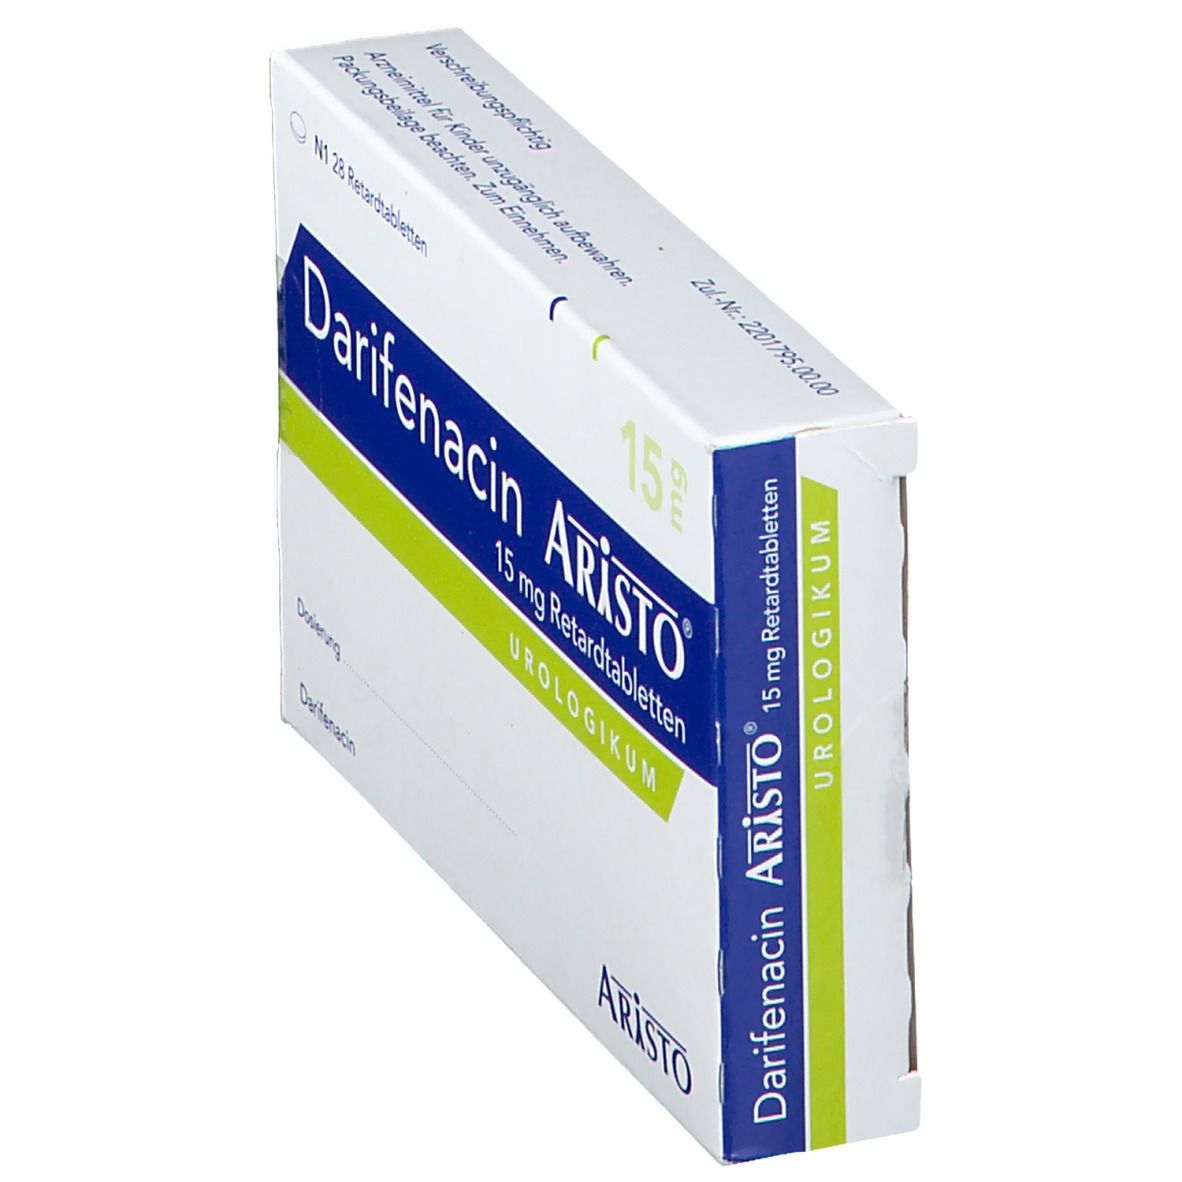 Darifenacin Aristo® 15 mg